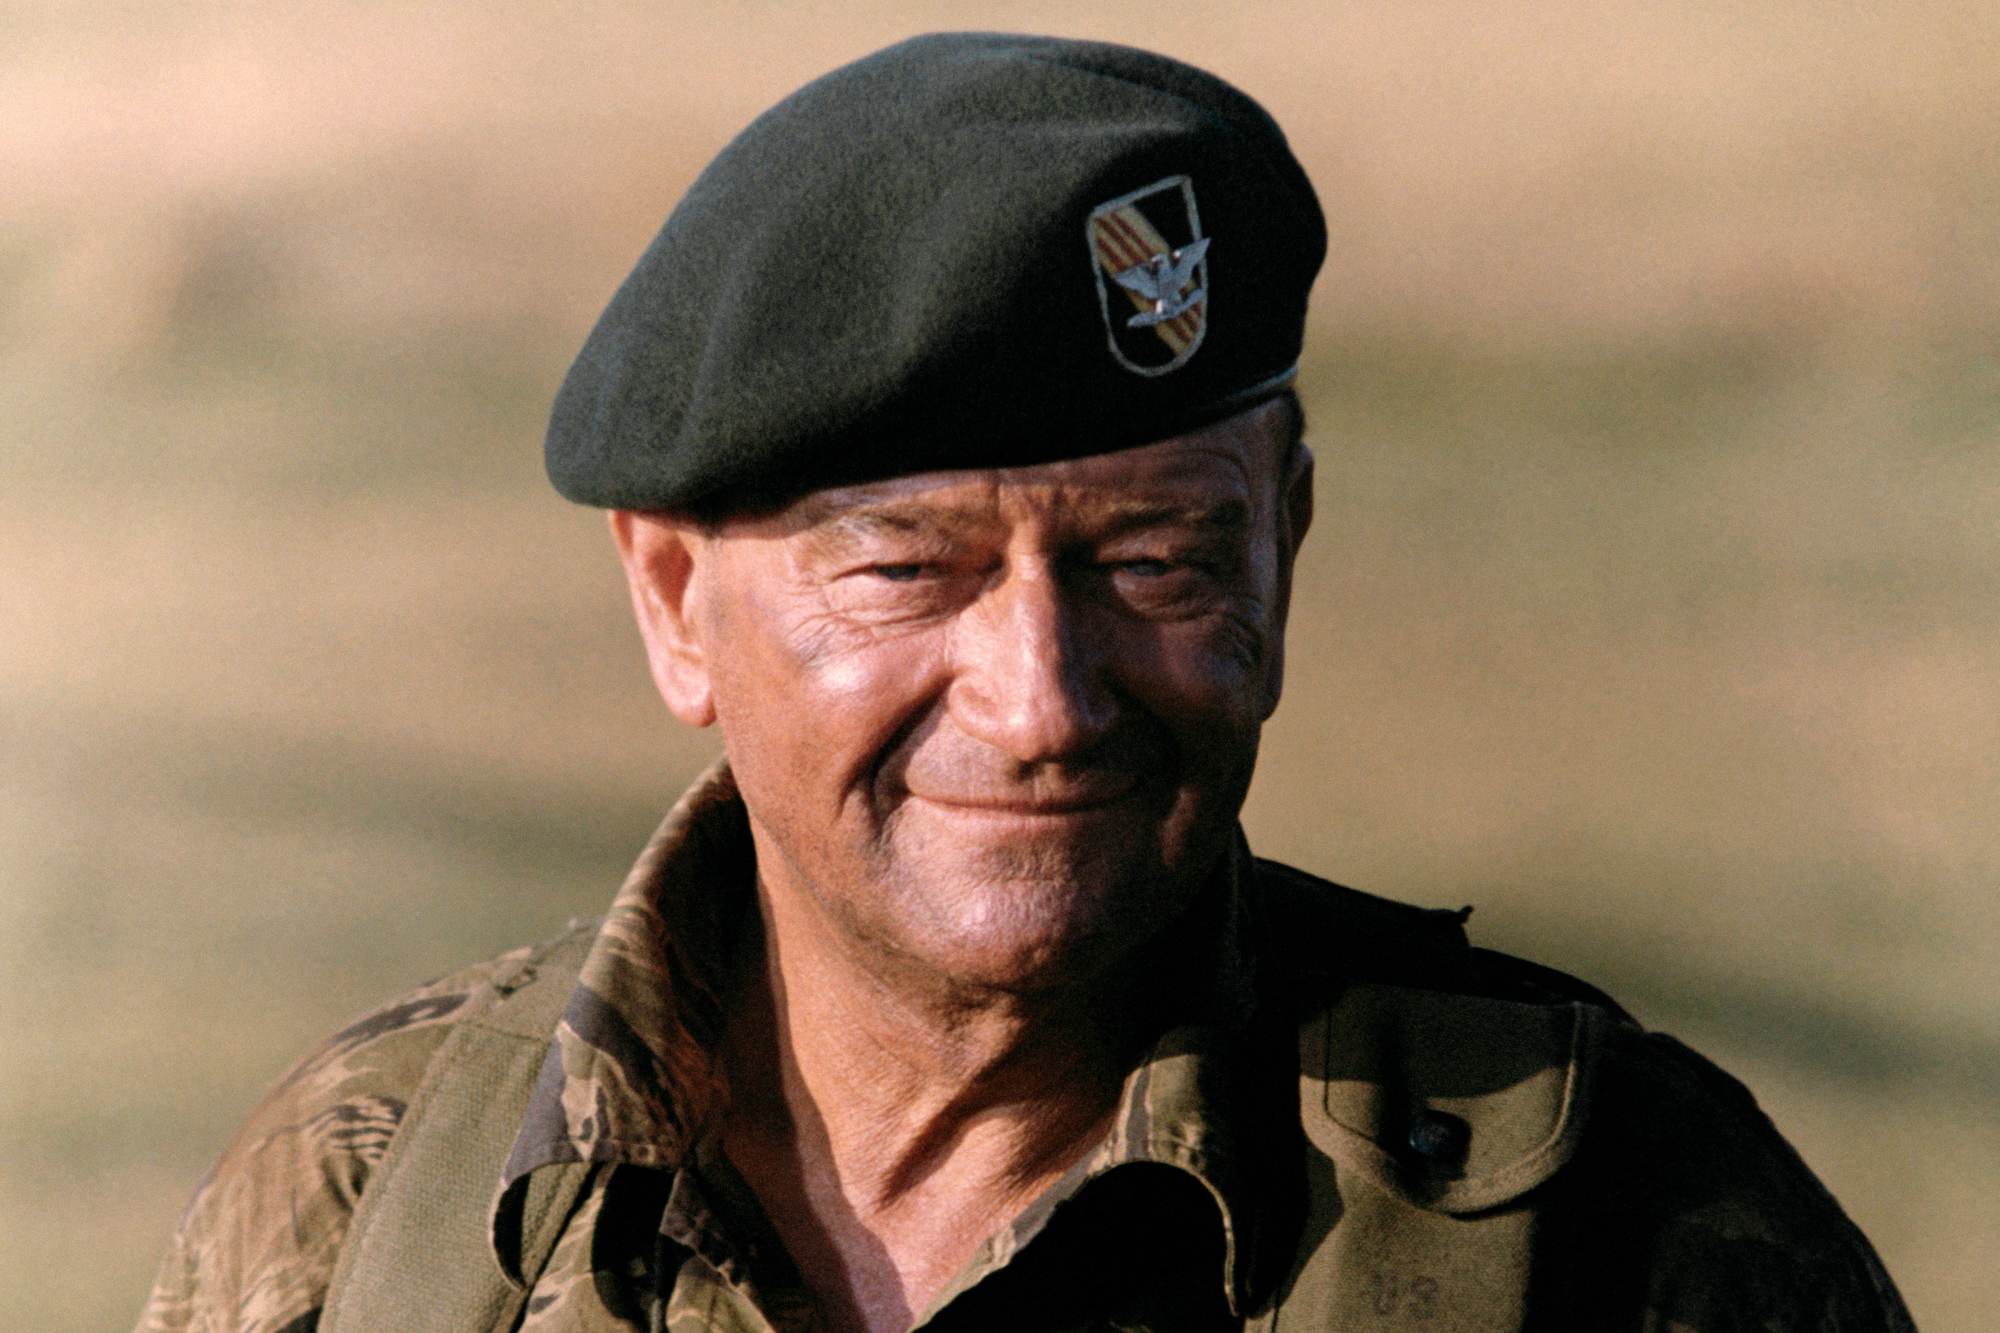 Vietnam War supporter John Wayne wearing a Green Berets uniform and smiling.